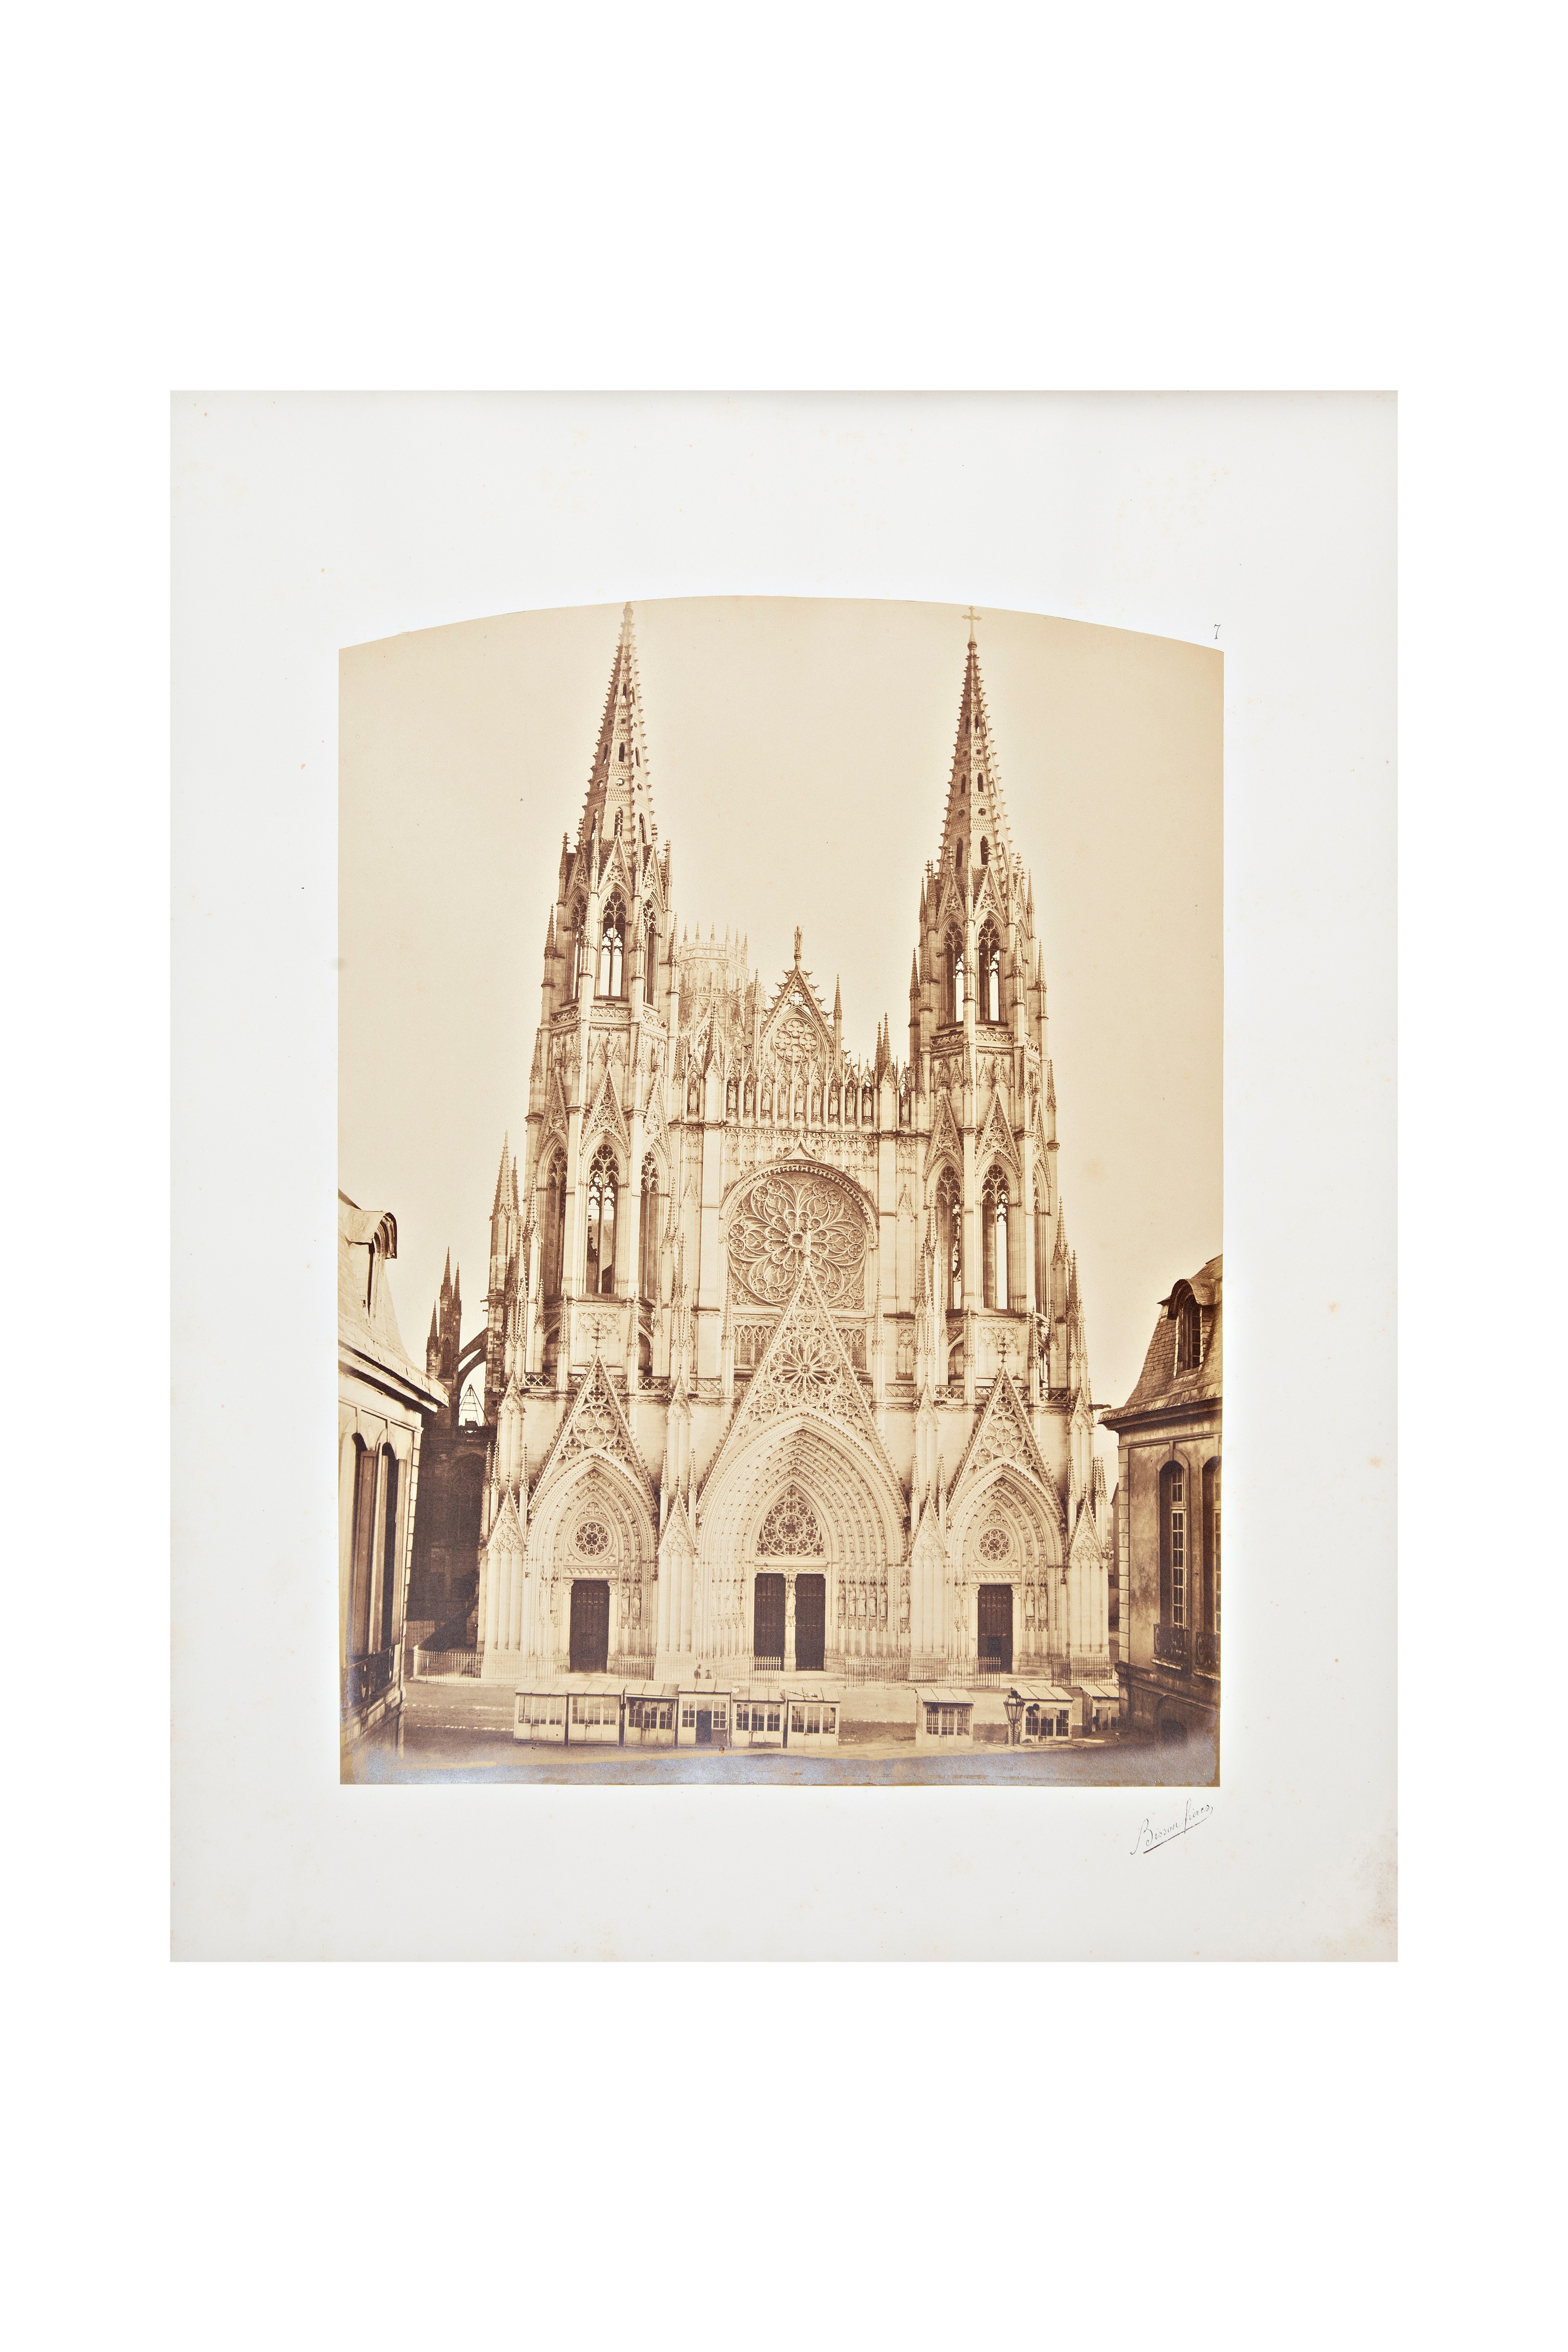 chiese - edifici religiosi - architettura (positivo) di Frères Bisson (metà XIX)